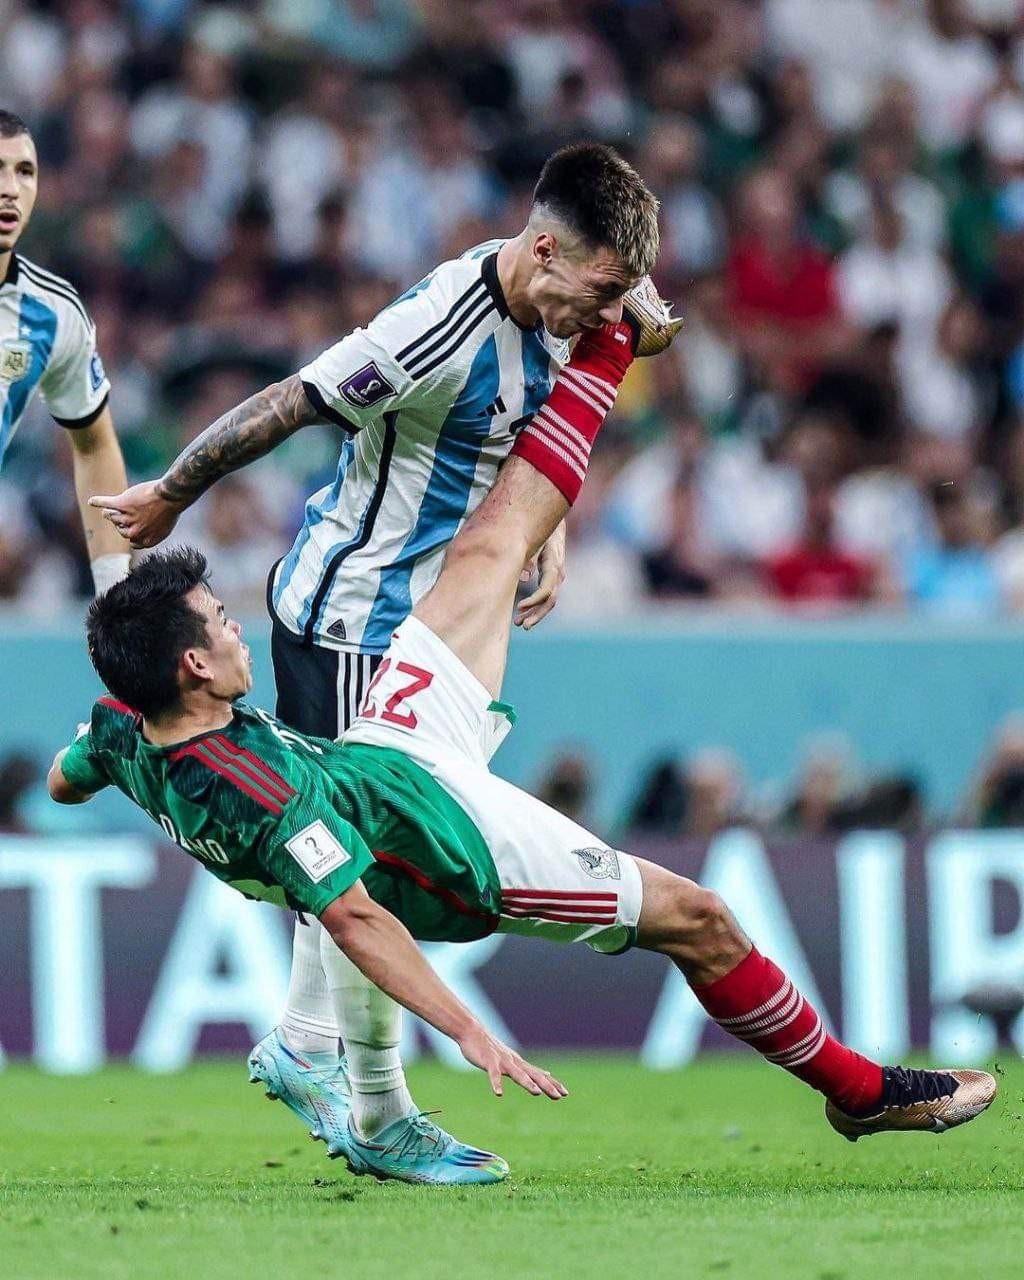 بالصور : الأرجنتين تستعيد بريقها بثنائية أمام المكسيك